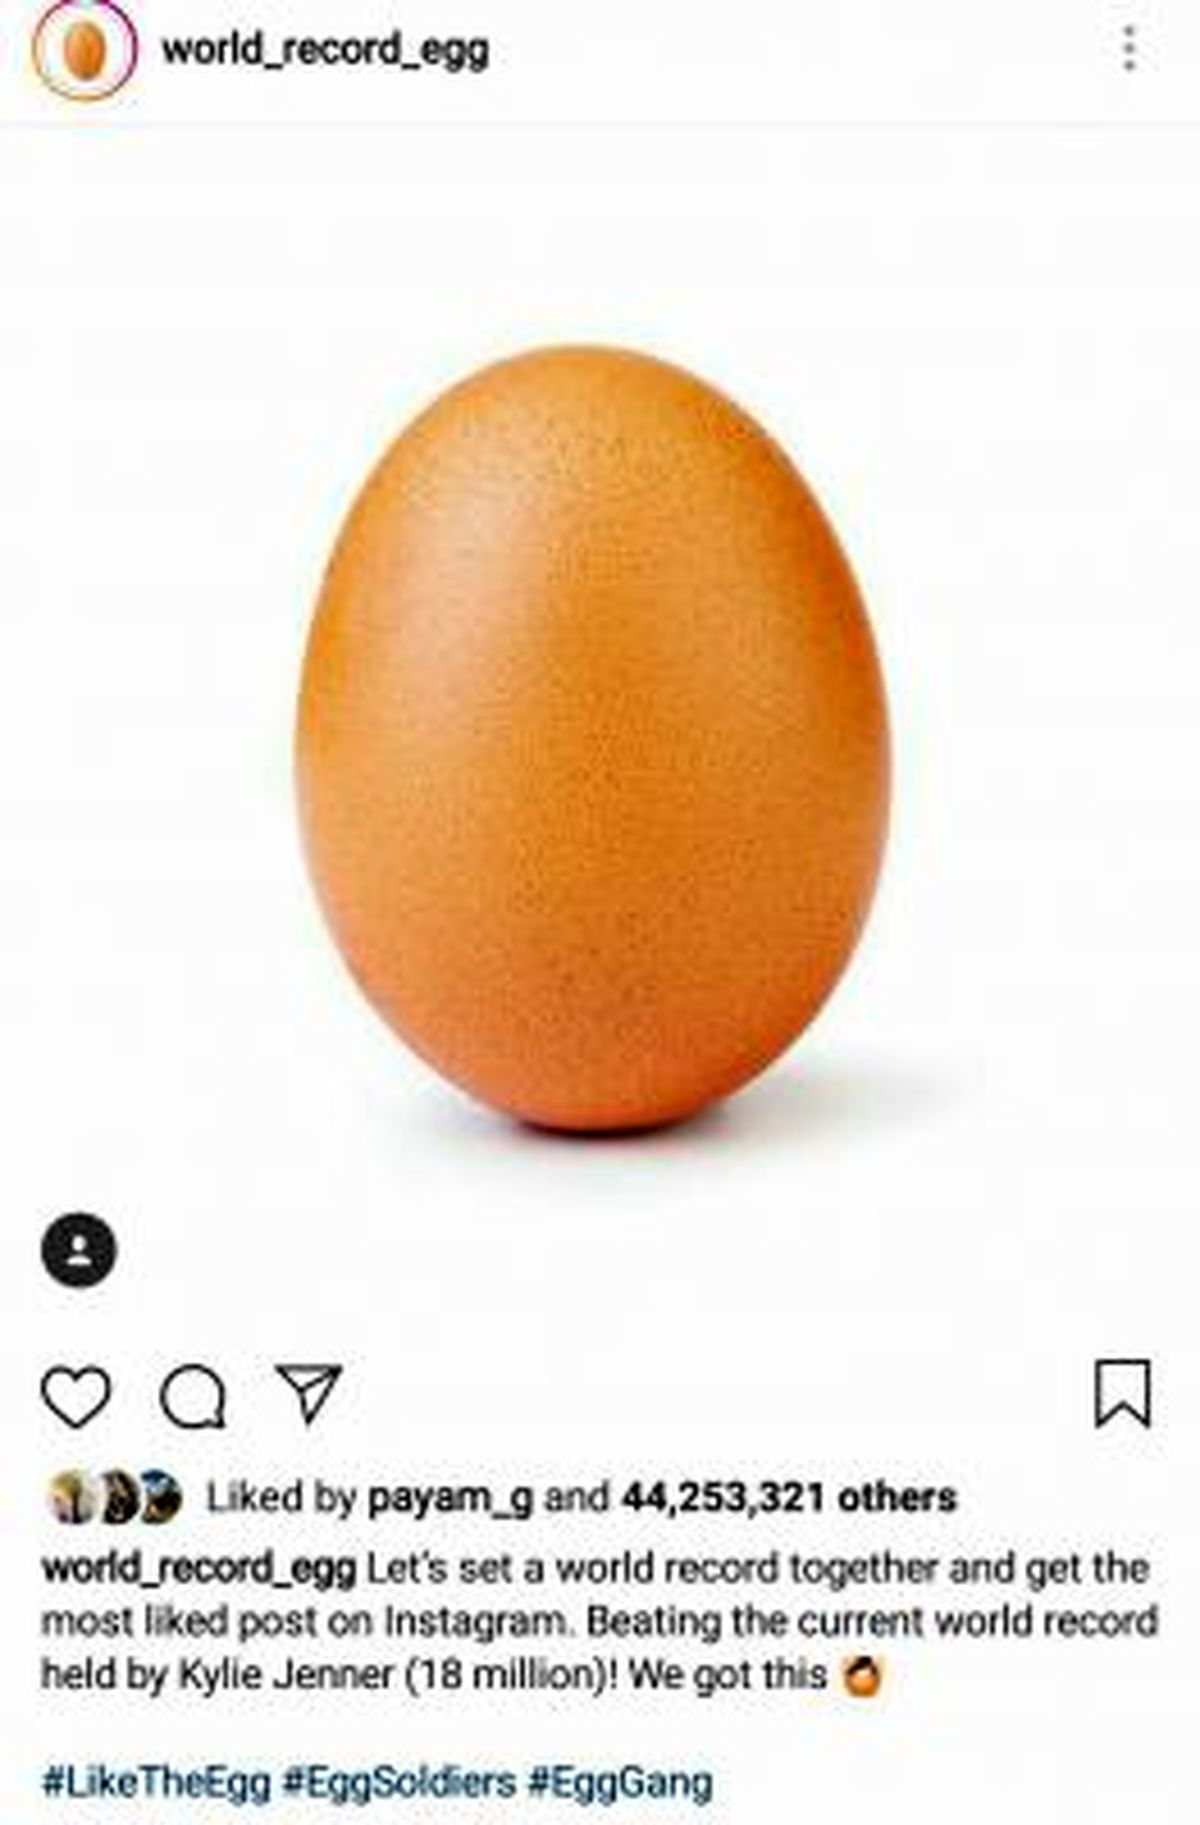 چگونه تصویر یک تخم مرغ رکورد لایک اینستاگرام را شکست؟/ رکورددار قبلی لایک اینستاگرام هم به این حادثه واکنش نشان داد